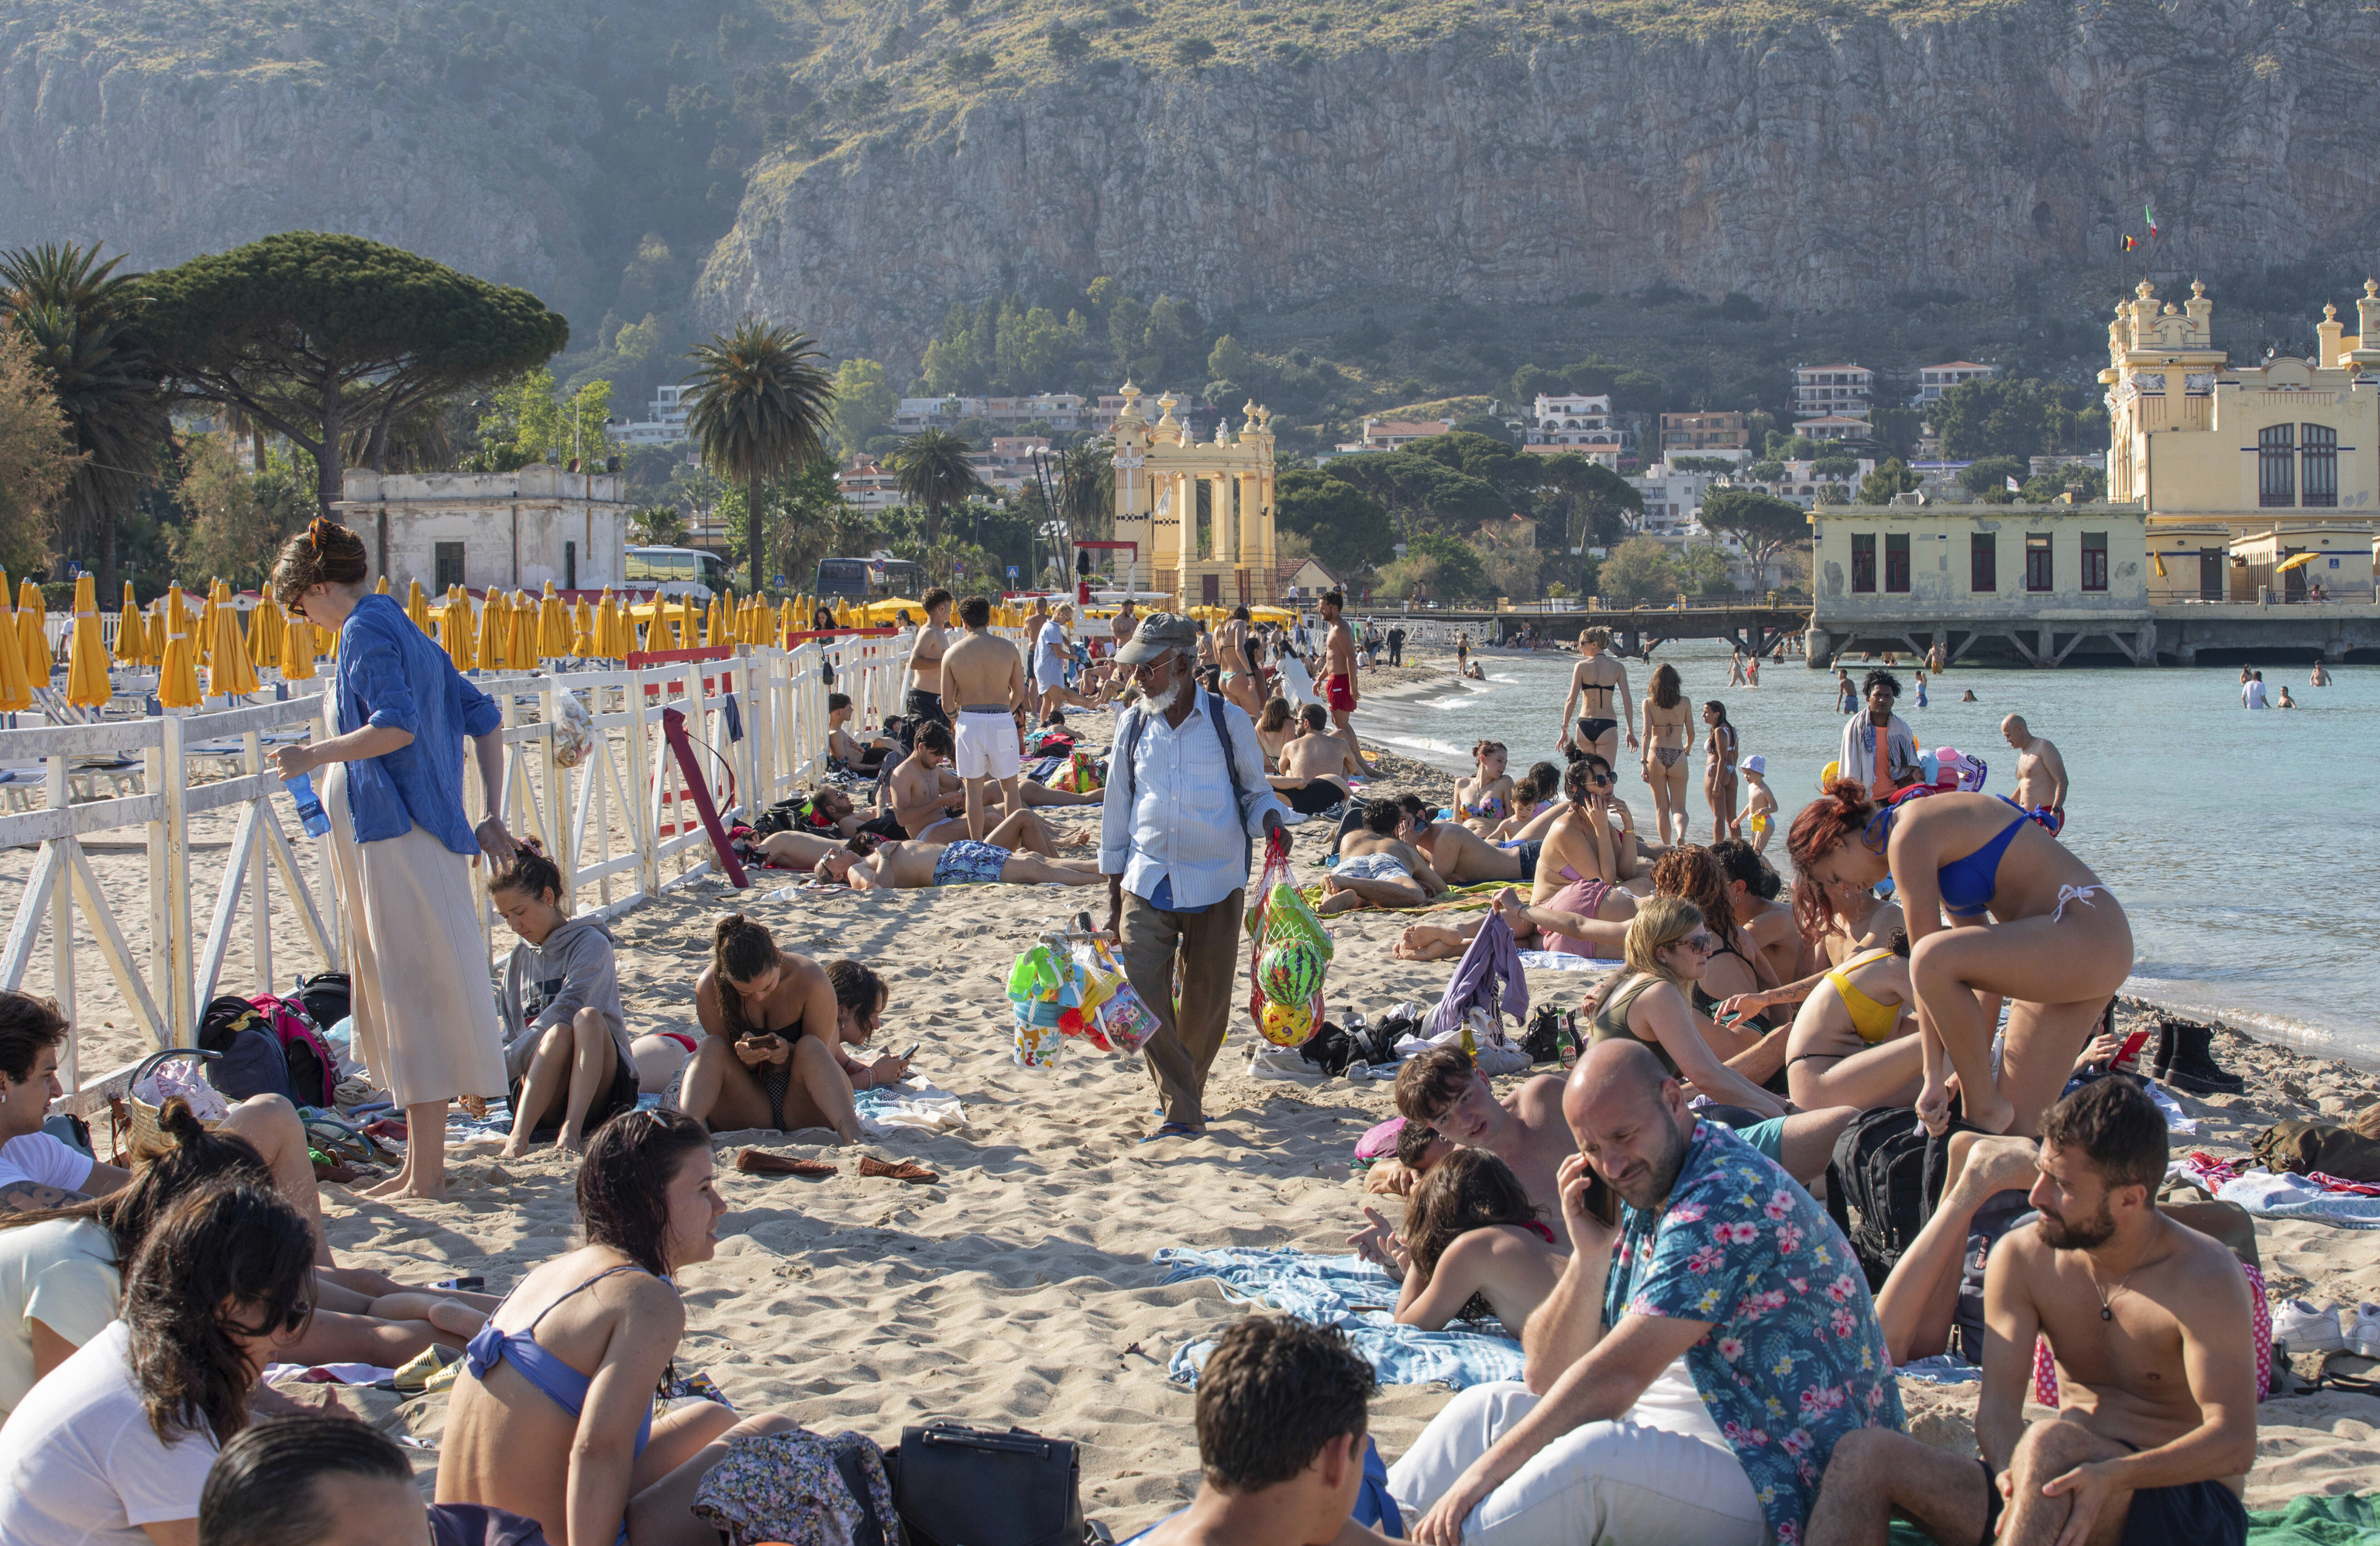 Un vendedor ambulante ofrece sus productos a los bañistas de la playa de Mondello (Palermo).